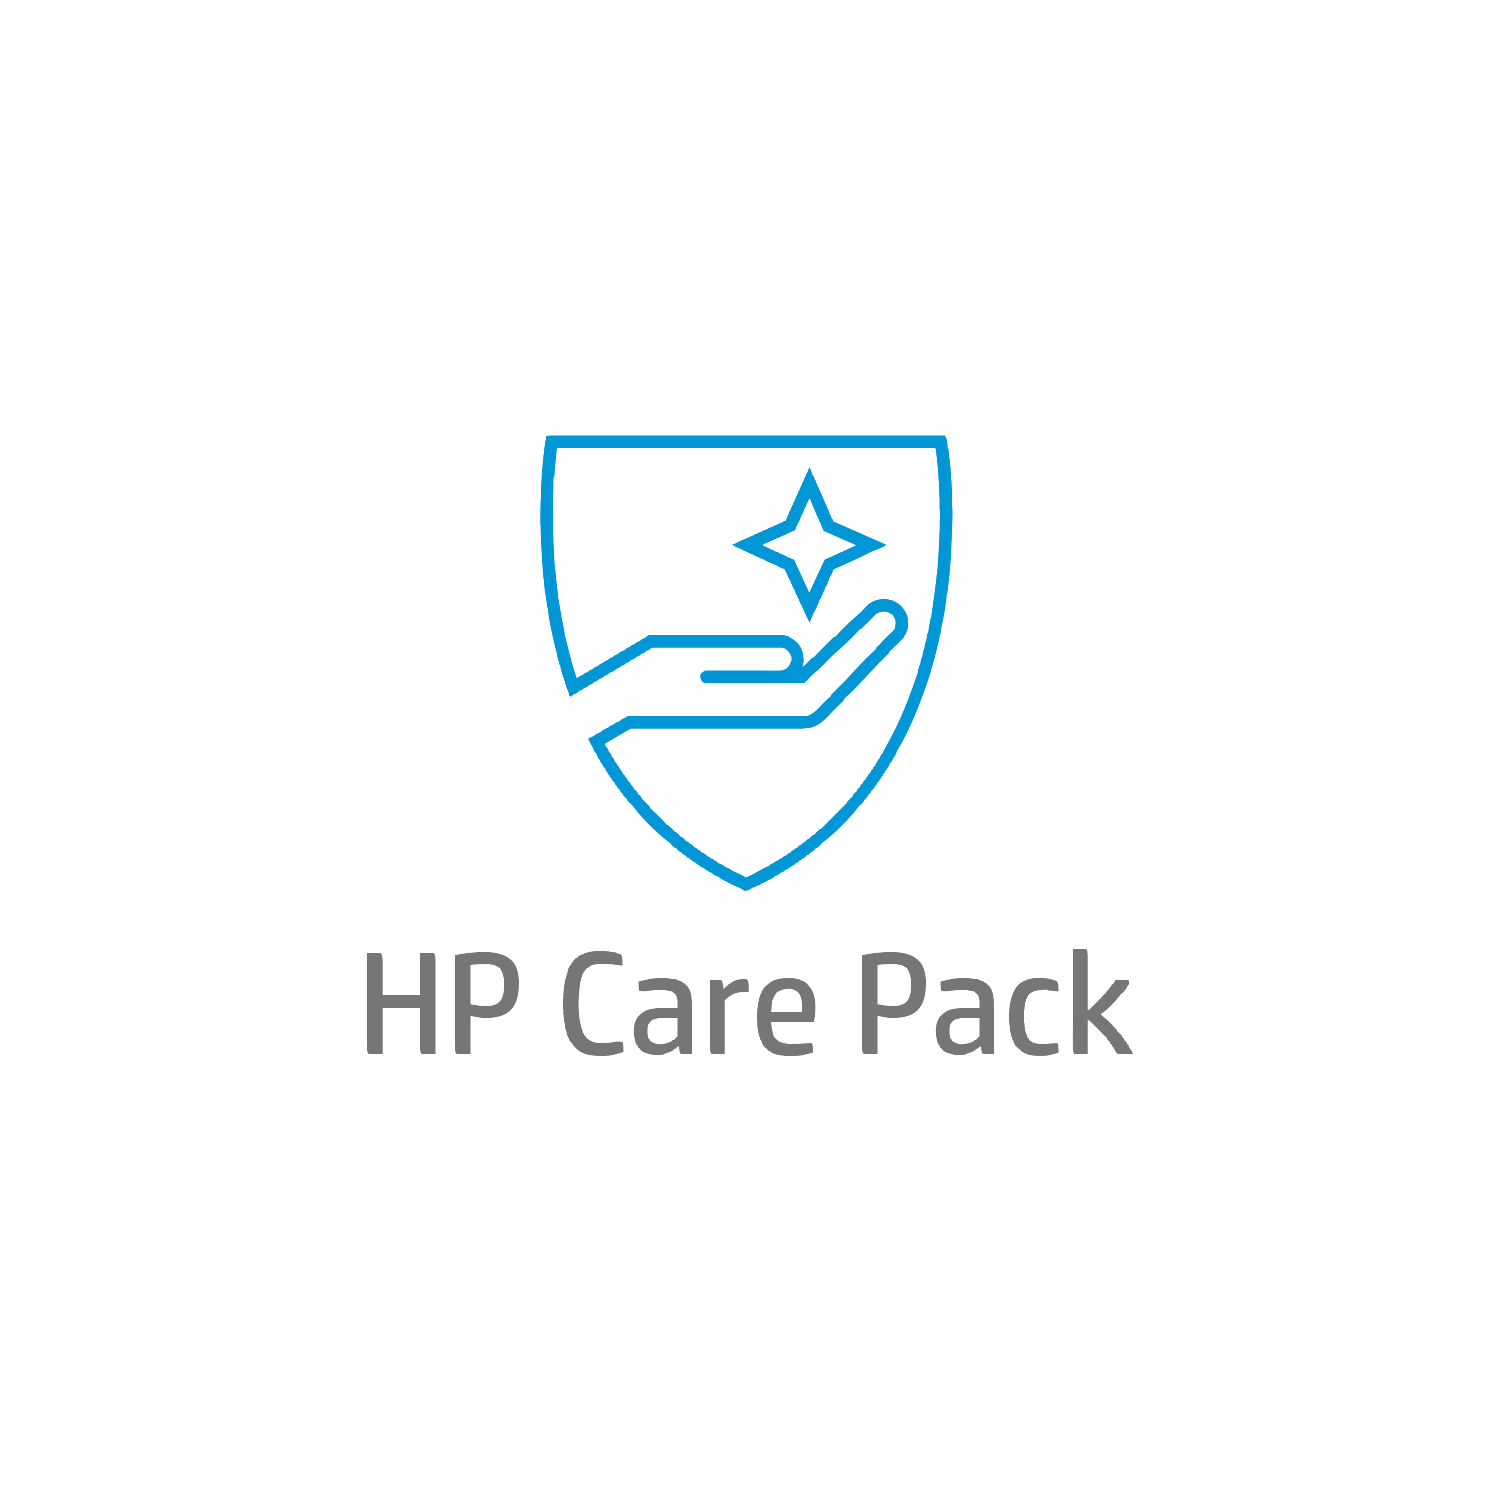 Bild von HP 1 Jahr Hardware-Support nach Garantieablauf mit Abhol- und Rückgabeservice für Notebooks - 1 Lizenz(en) - 1 Jahr(e)